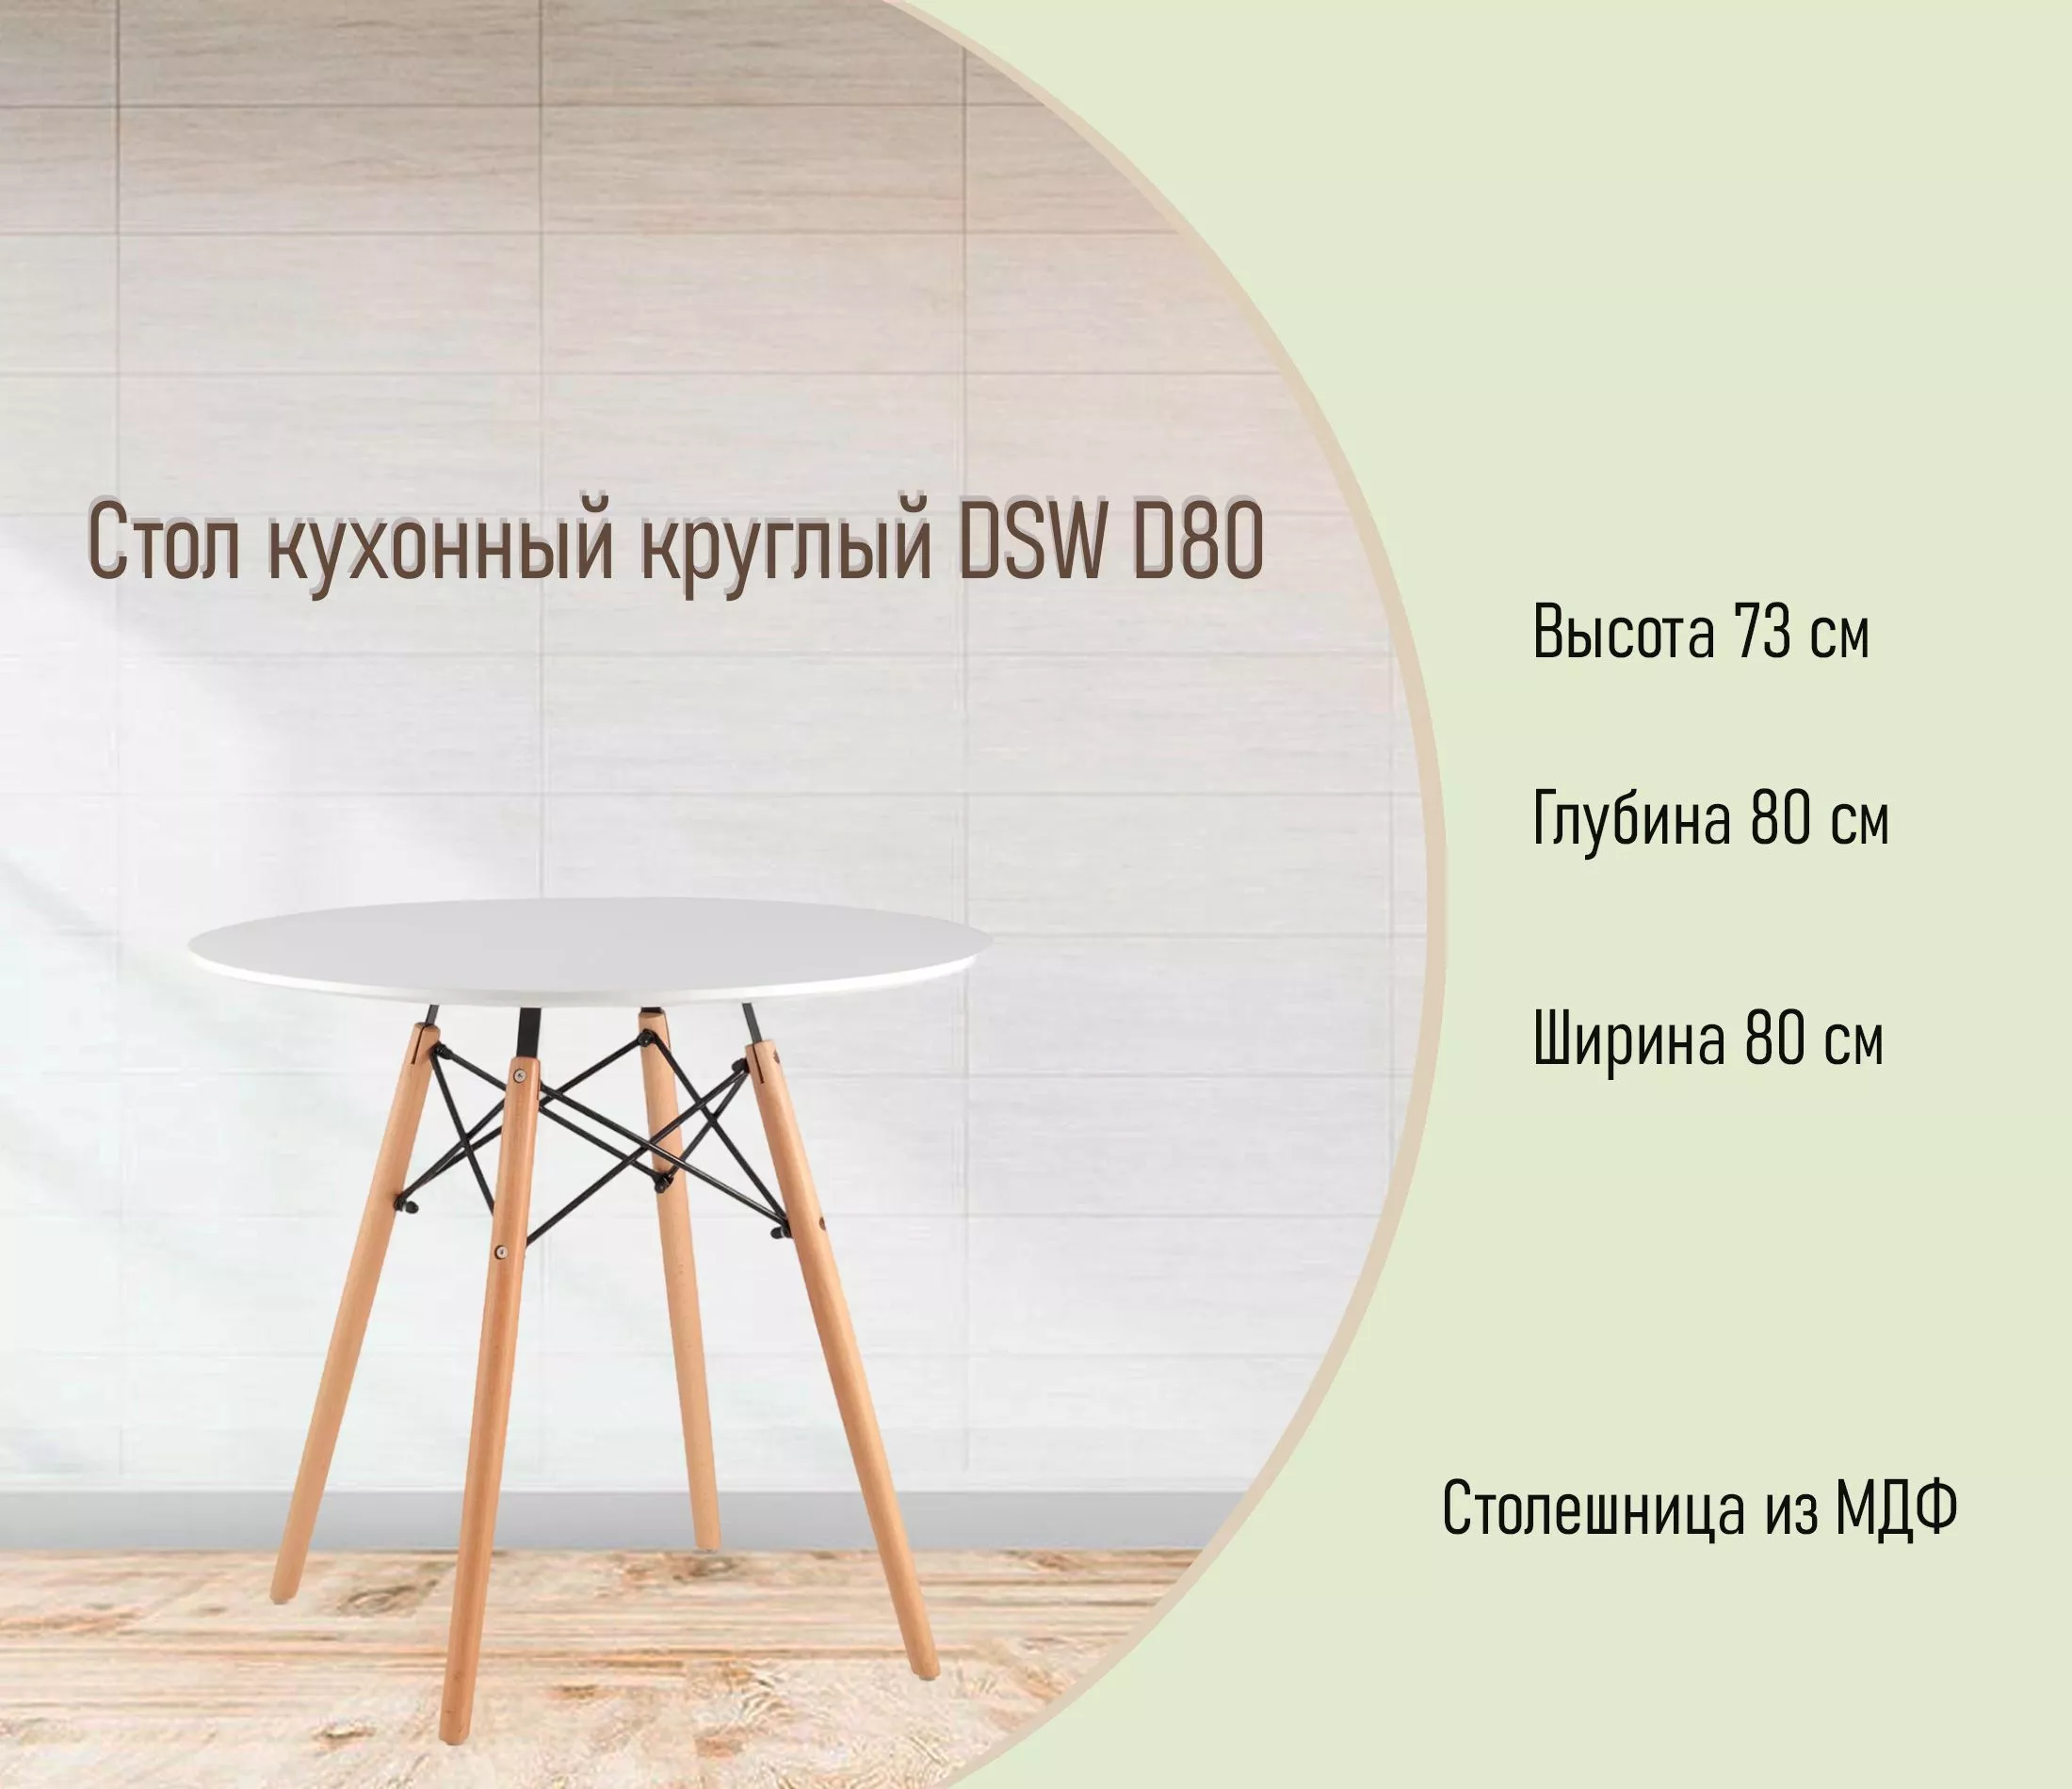 Стол кухонный круглый DSW D80